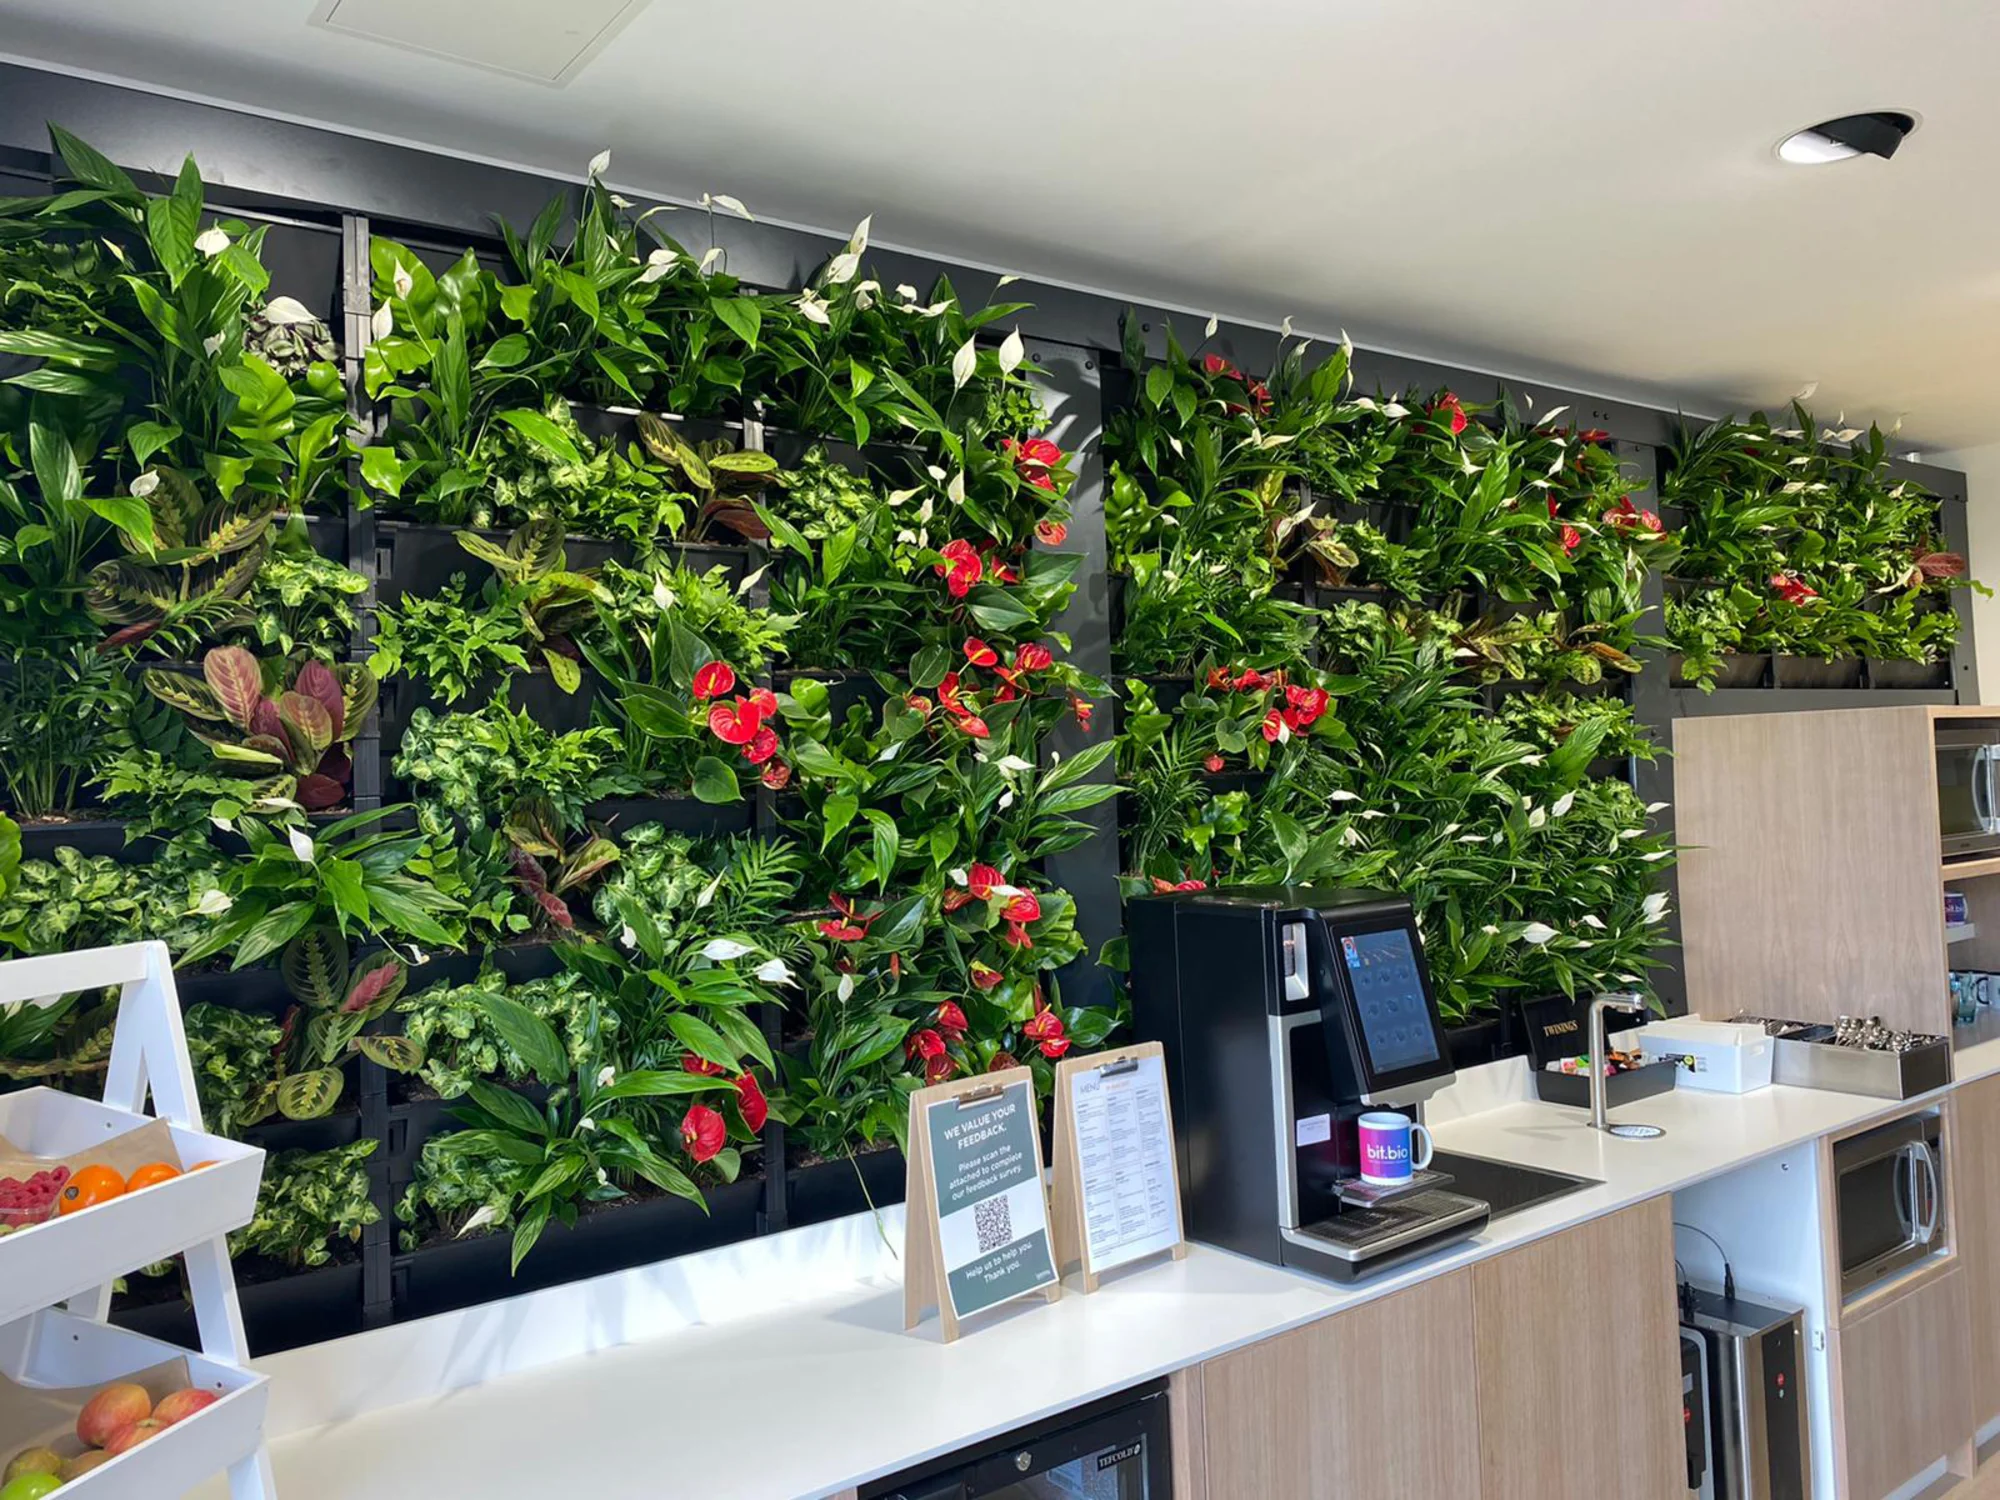 Pflanzenwand, Wandbegrünung, vertikaler Garten mit echten Pflanzen in einer Cafeteria